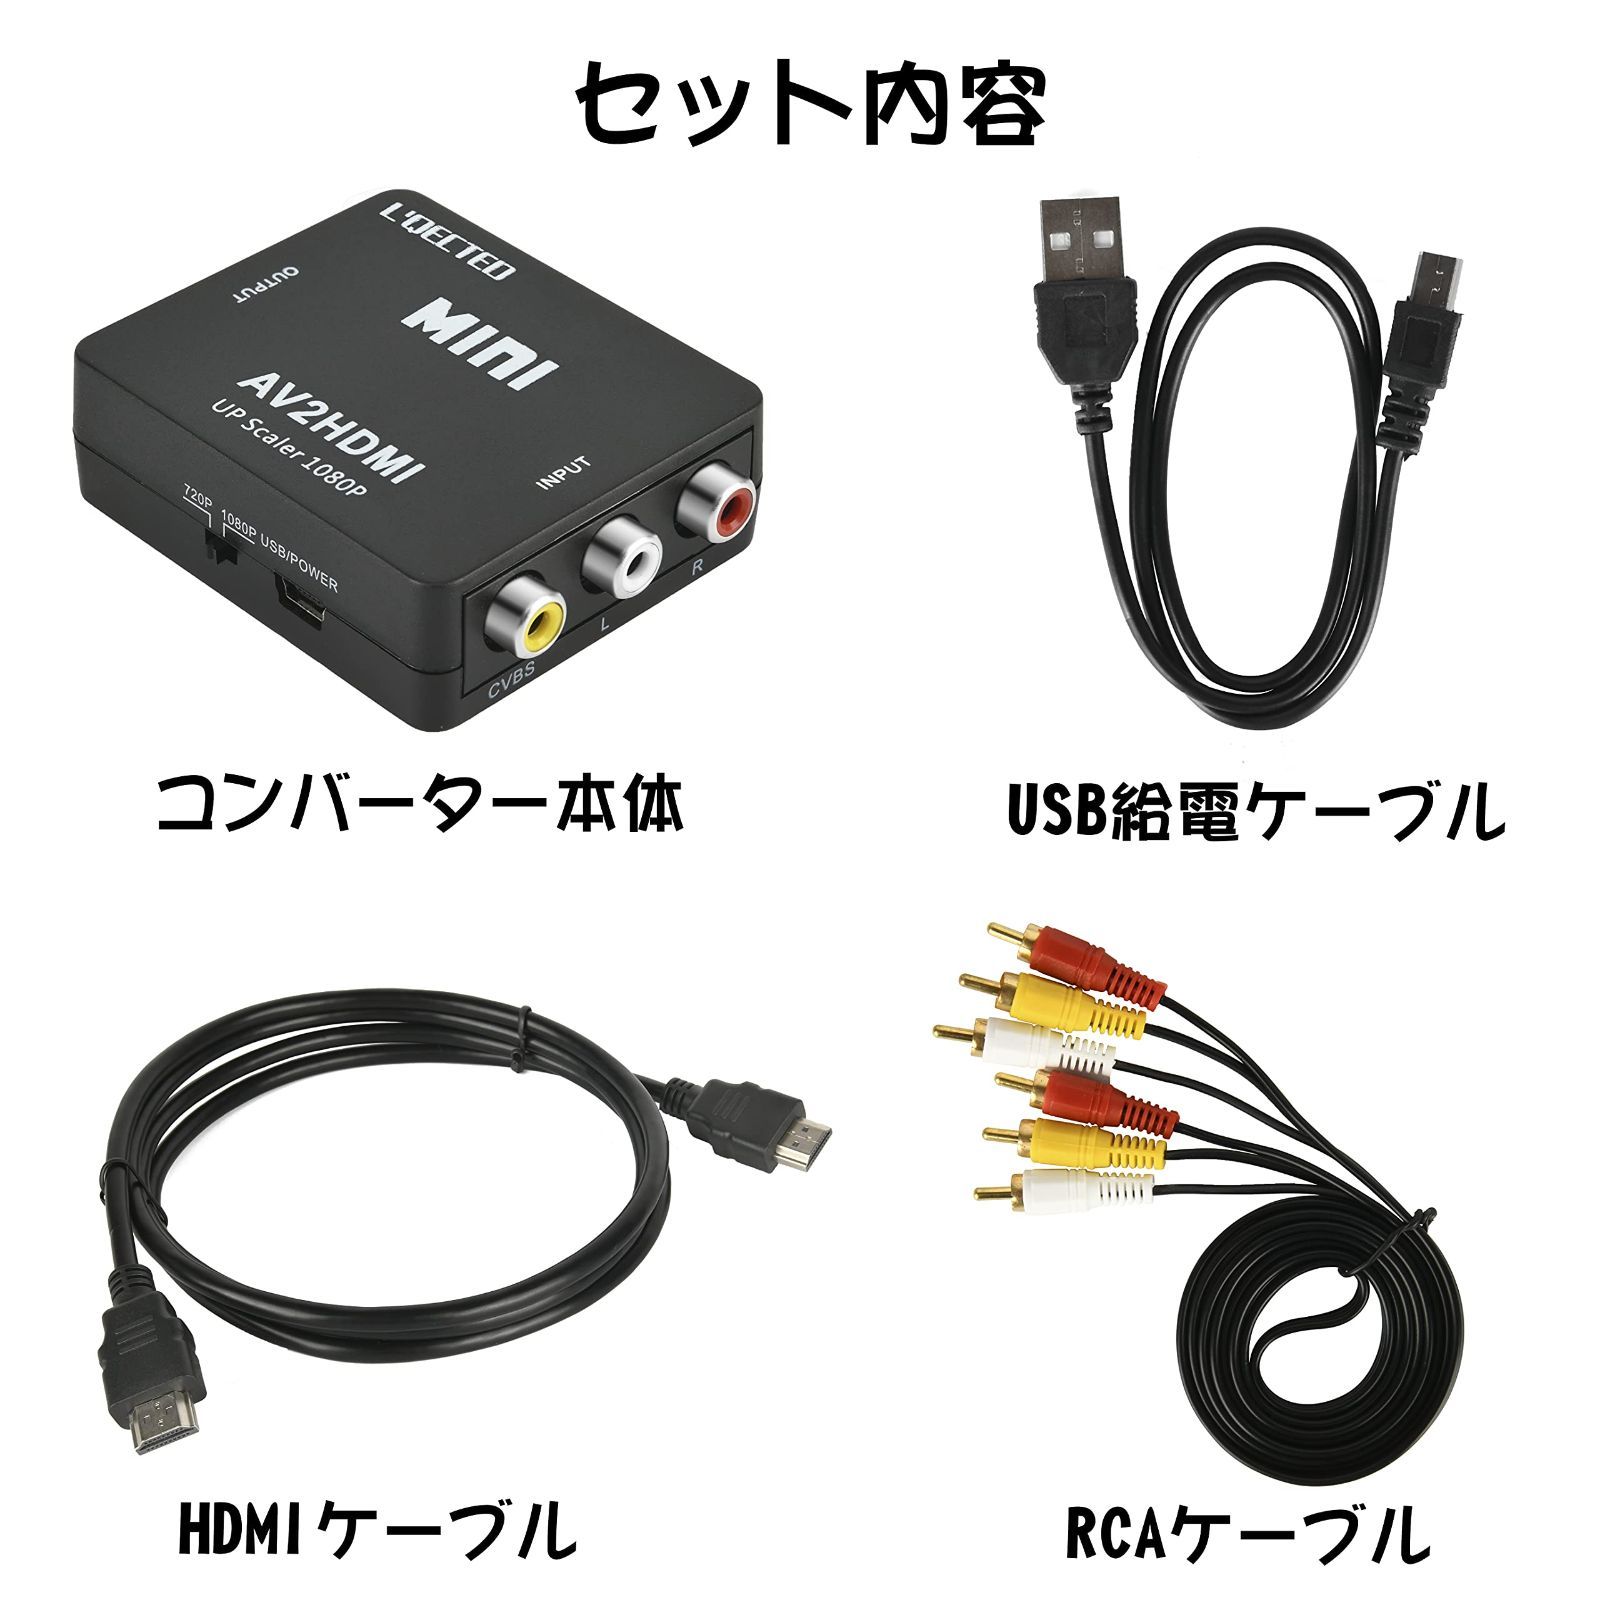 RCA to HDMI変換コンバーター AV to HDMI 変換器 ?AV2HDMI ３.５mm